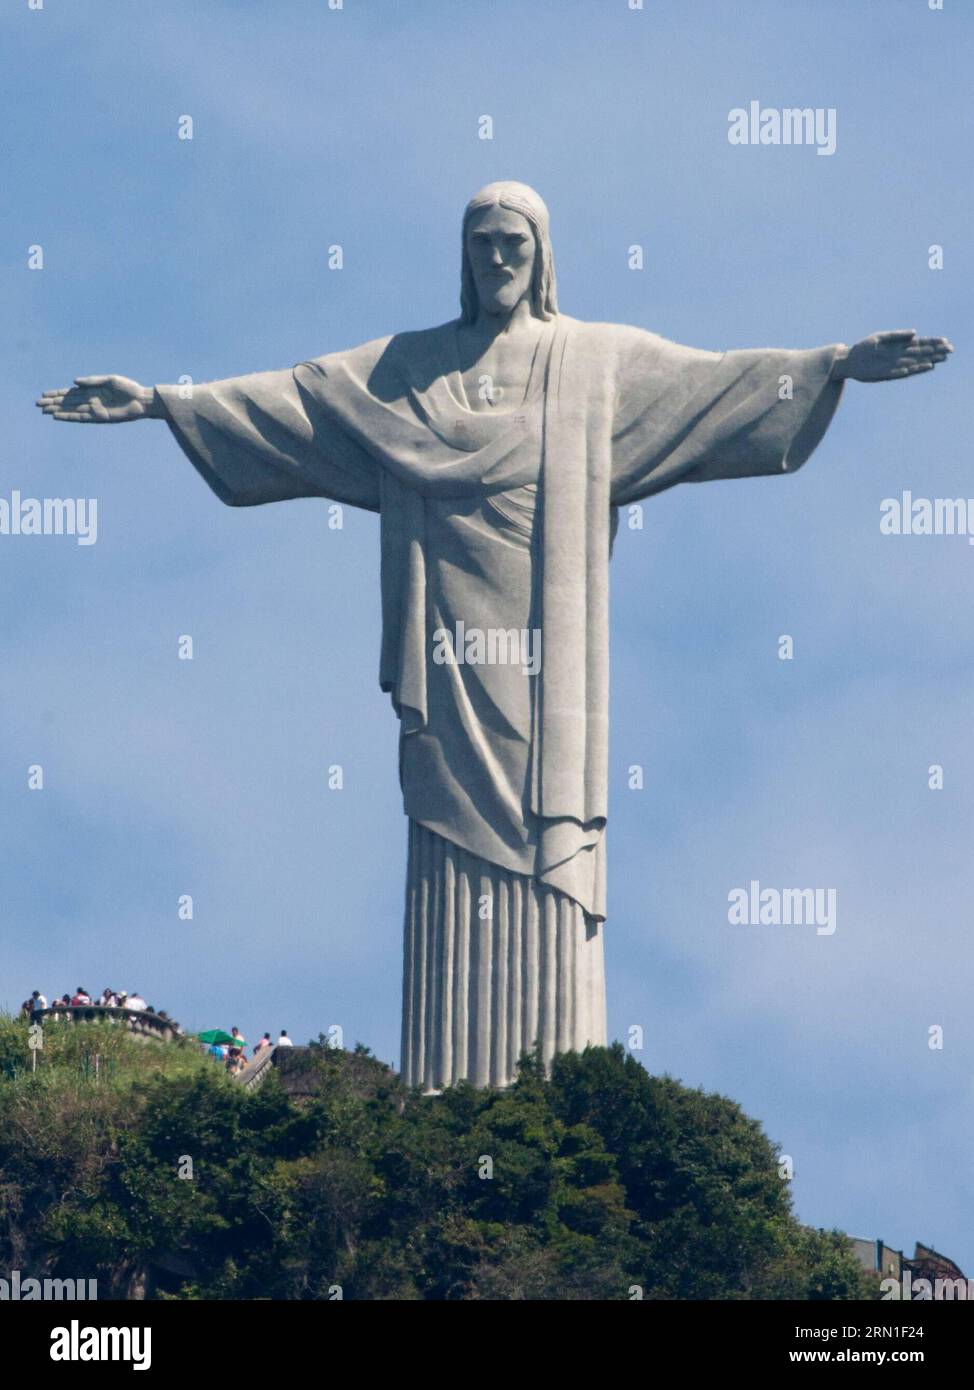 (141226) -- RIO DE JANEIRO, 26 décembre 2014 -- des visiteurs sont vus sur le pont sous la statue du Christ Rédempteur à Rio de Janeiro, Brésil, le 22 avril 2014. Christ Rédempteur est une statue célèbre de Jésus-Christ à Rio de Janeiro, au Brésil, créée par le sculpteur français Paul Landowski et construite par l'ingénieur brésilien Heitor da Silva Costa, en collaboration avec l'ingénieur français Albert Caquot. La hauteur de la statue atteint 30 mètres et ses bras s'étendent sur 28 mètres de large. Sous la statue, il y a une petite chapelle dédiée à notre-Dame Aparecida, la sainte patronne du Brésil. La couleur d'illumi Banque D'Images